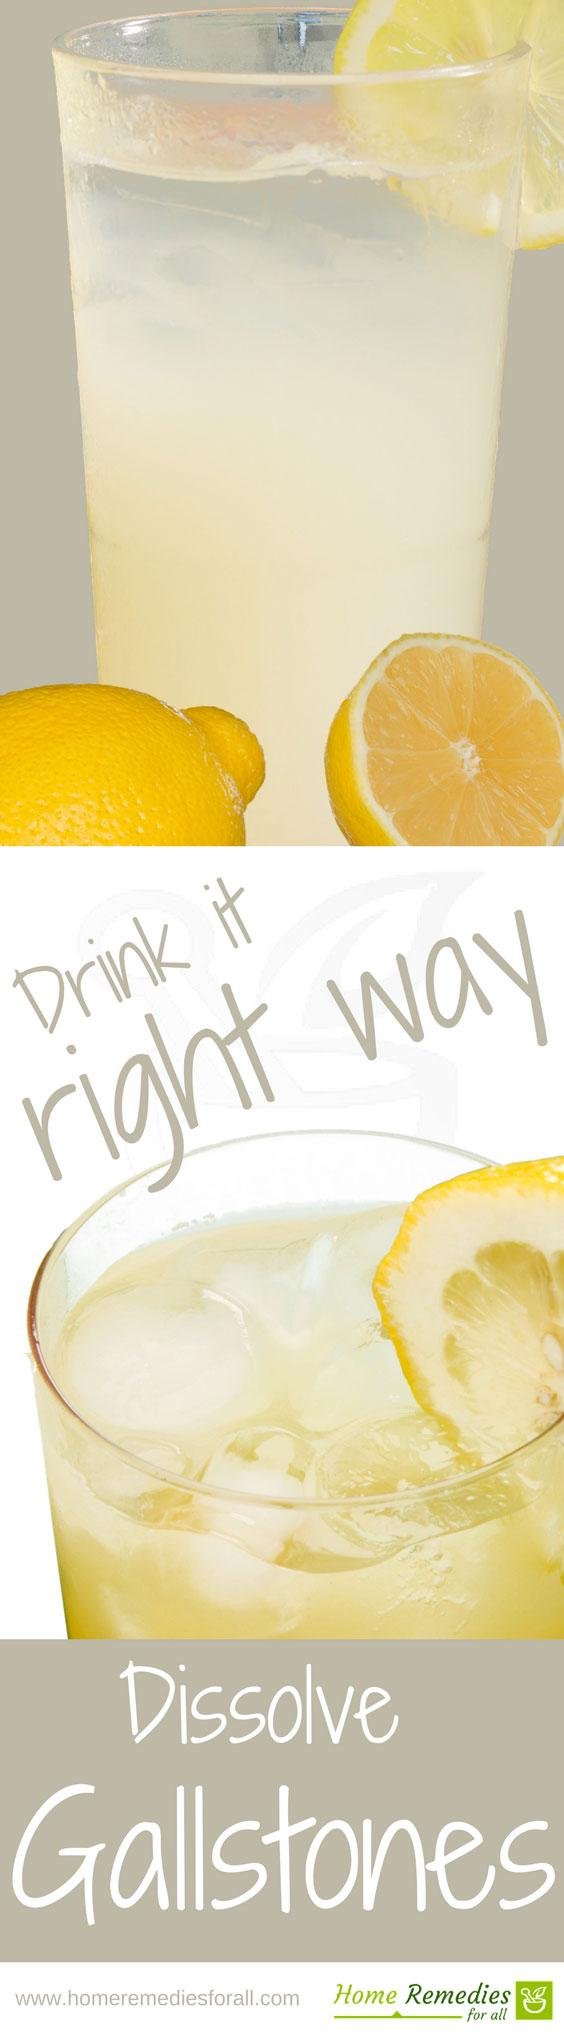 lemon for gallstones infographic